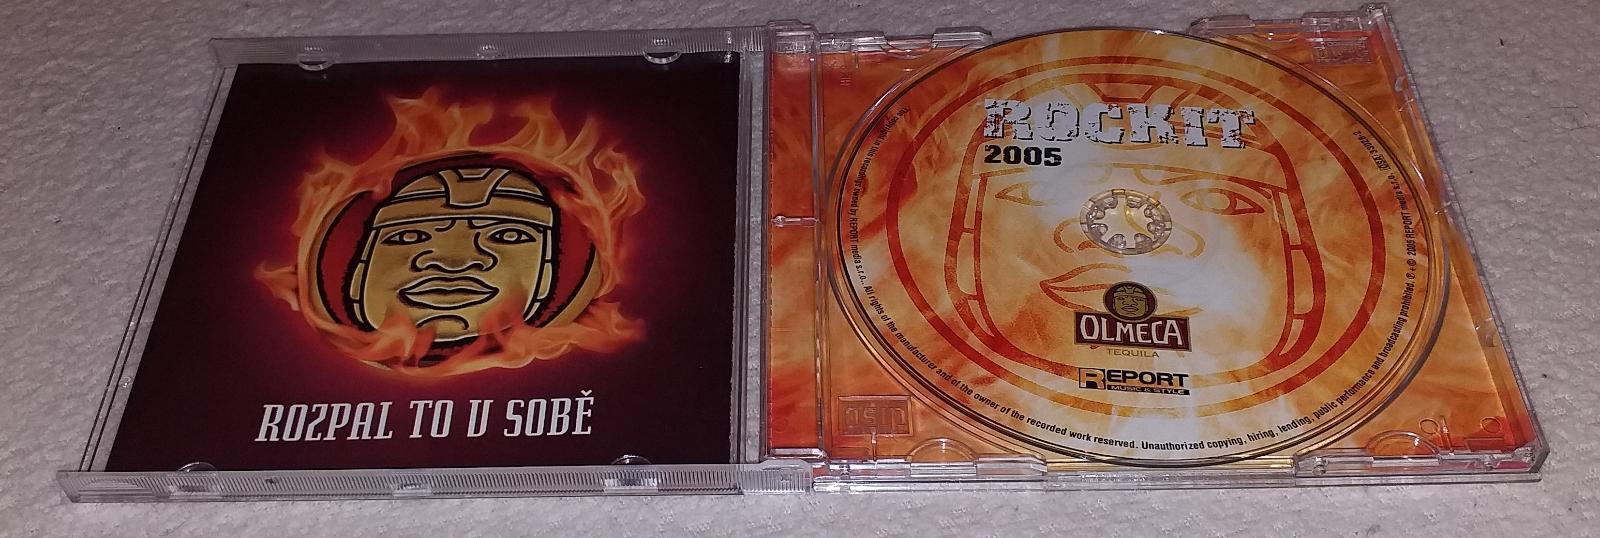 CD Rockit 2005 - Hudba